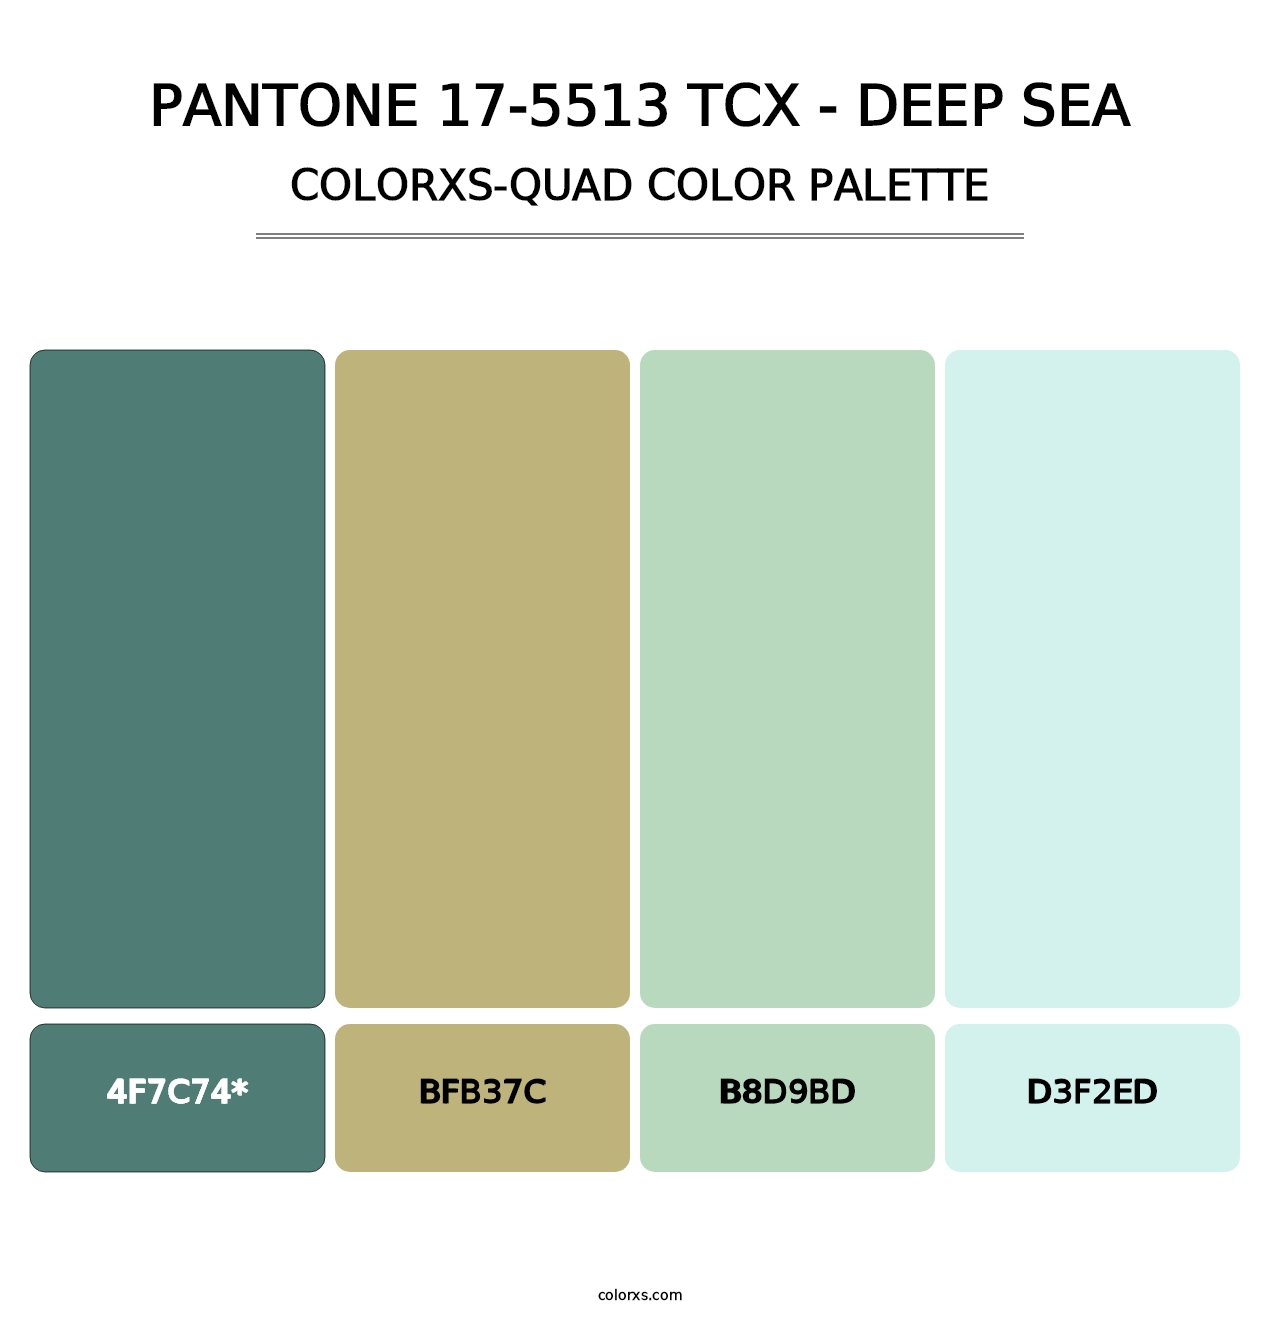 PANTONE 17-5513 TCX - Deep Sea - Colorxs Quad Palette